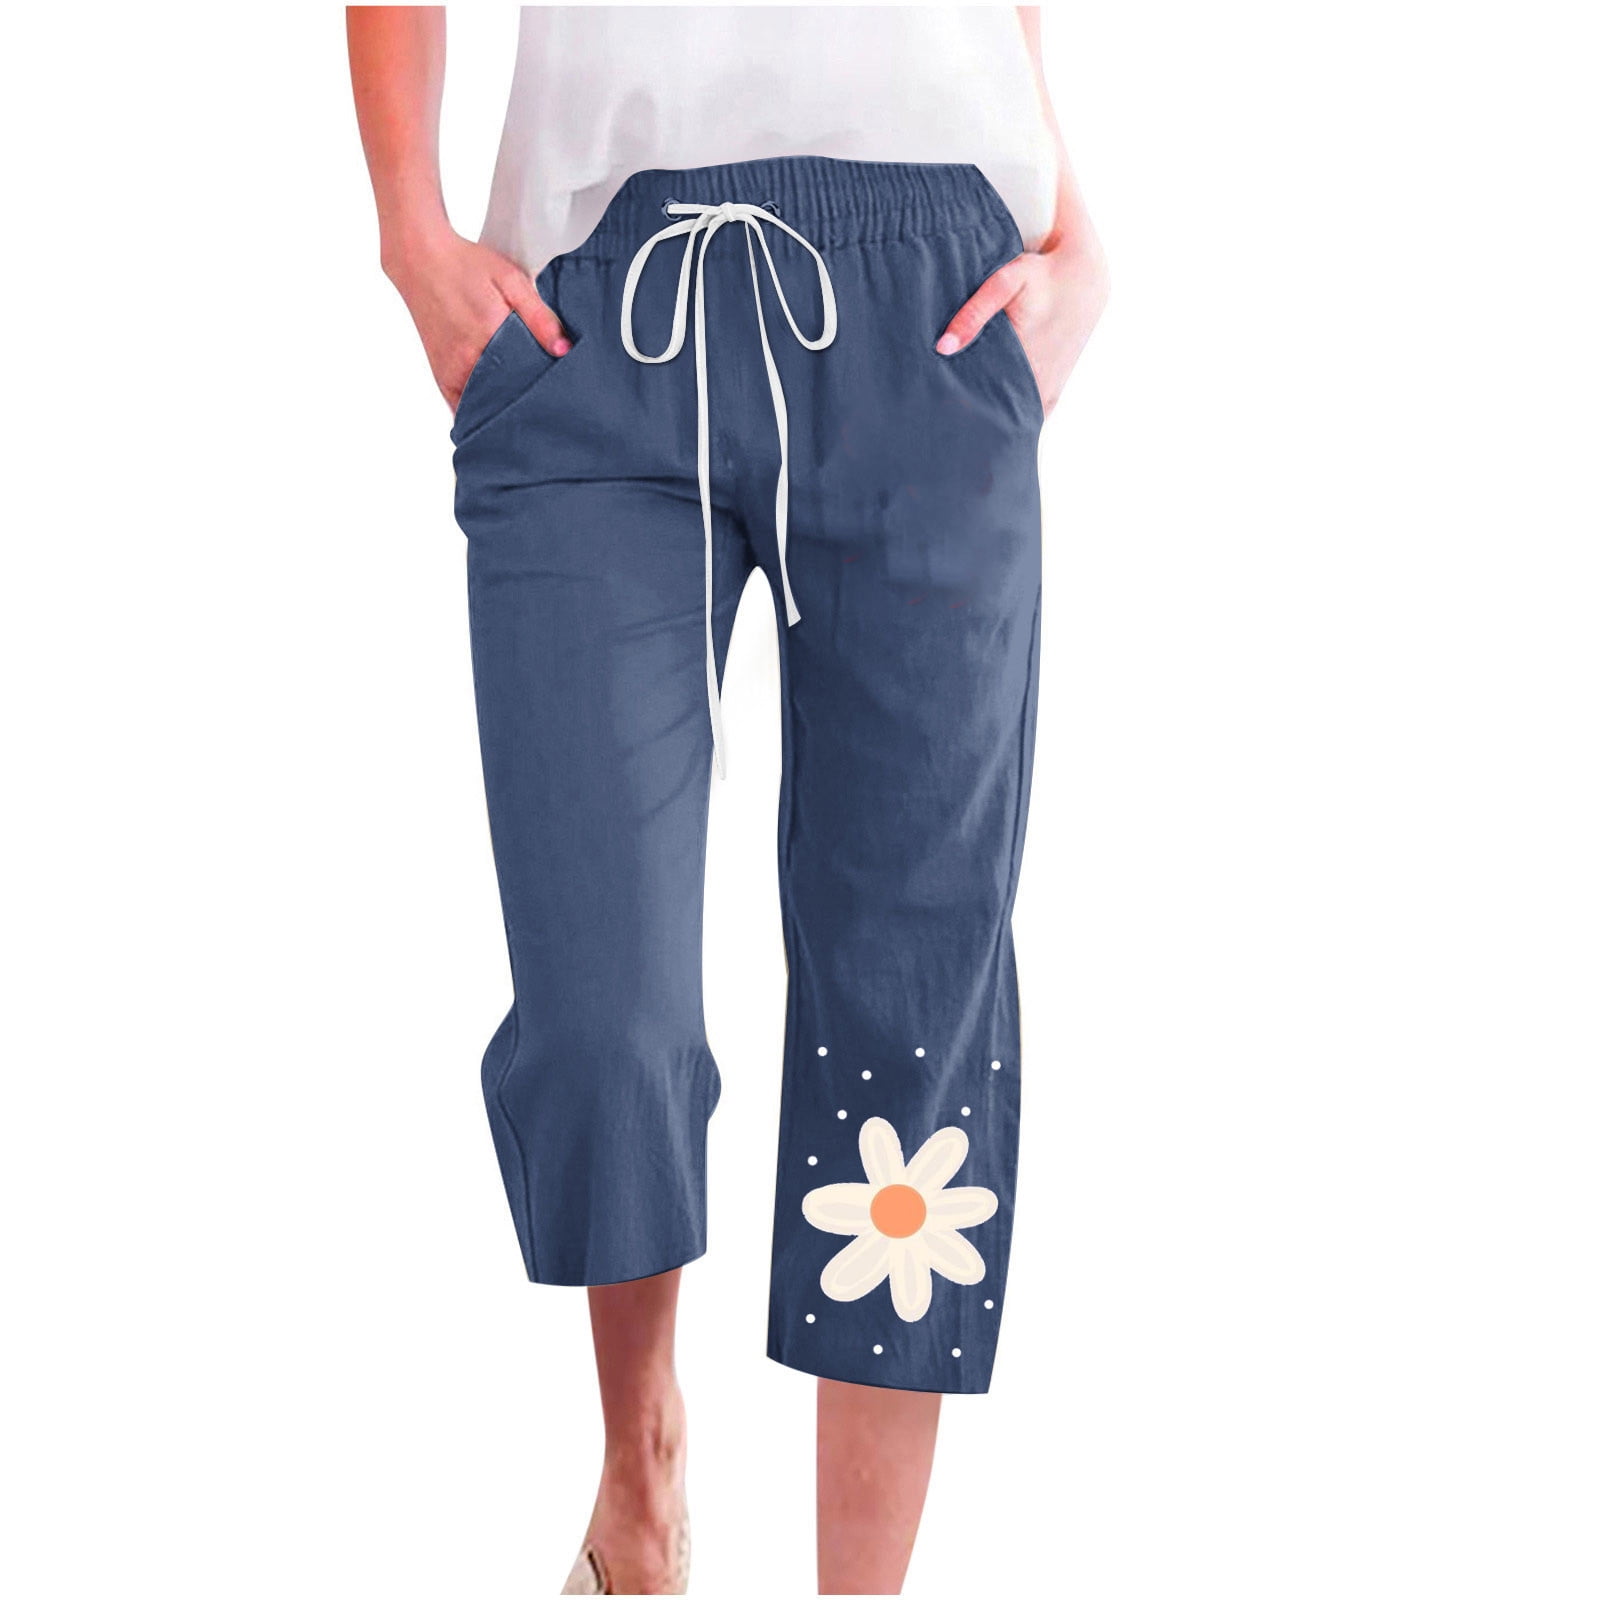 Undyed Elastic Waist Cotton Capri Pants Natural Color Pants High Waist  Pants Capri Pants Women Three Quarter Legs Pants -  Canada